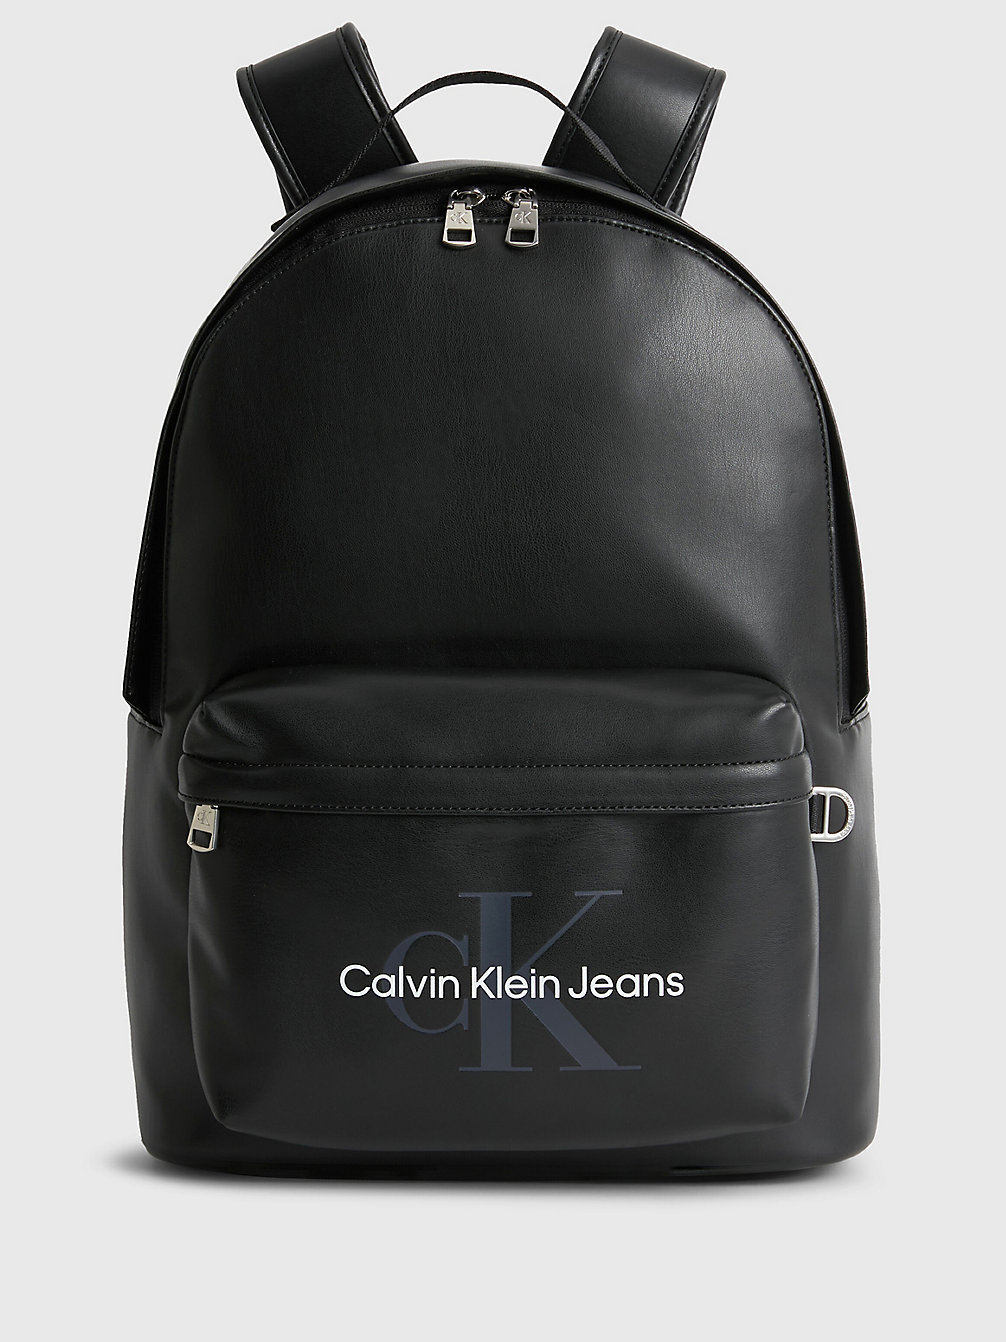 BLACK > Runder Rucksack > undefined Herren - Calvin Klein